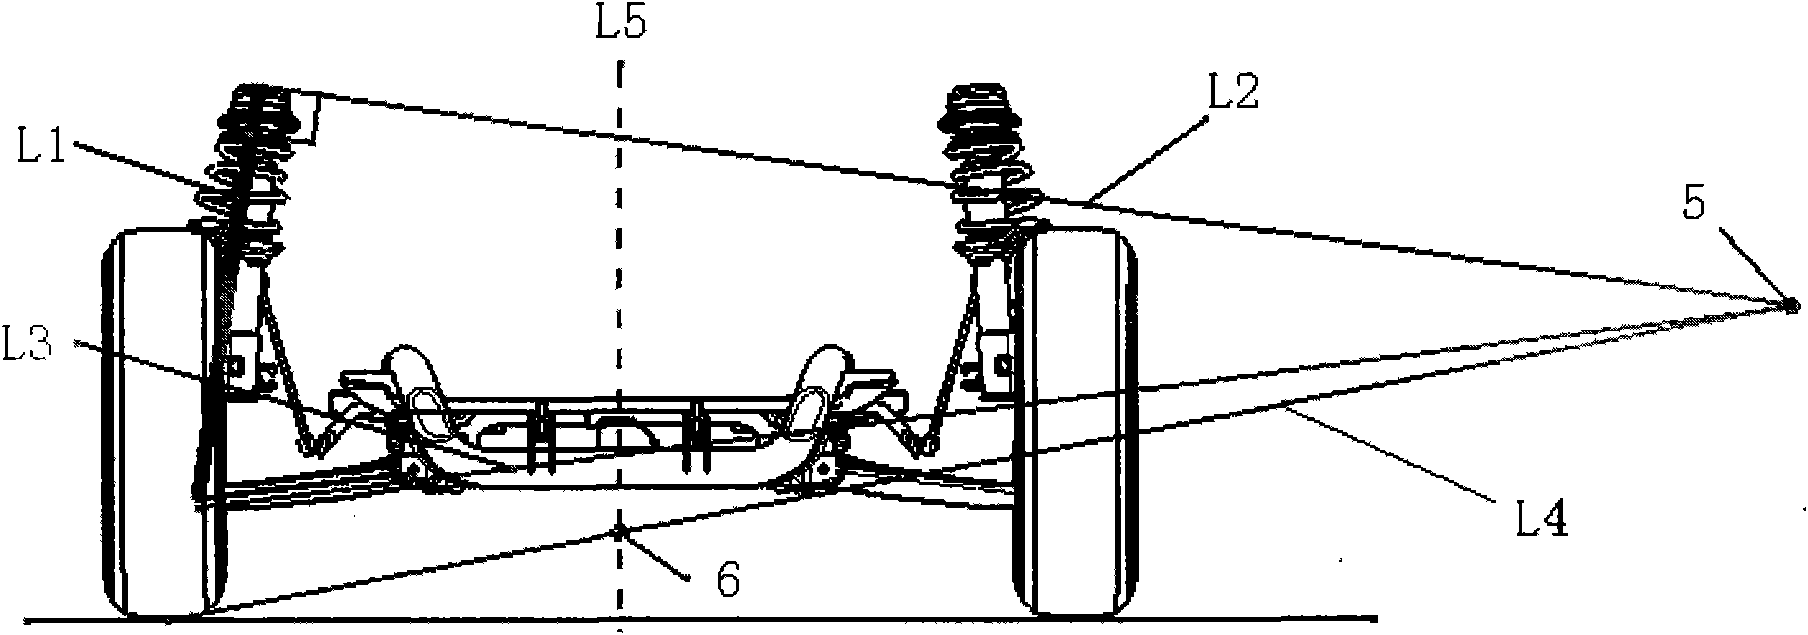 Method for designing McPherson suspension